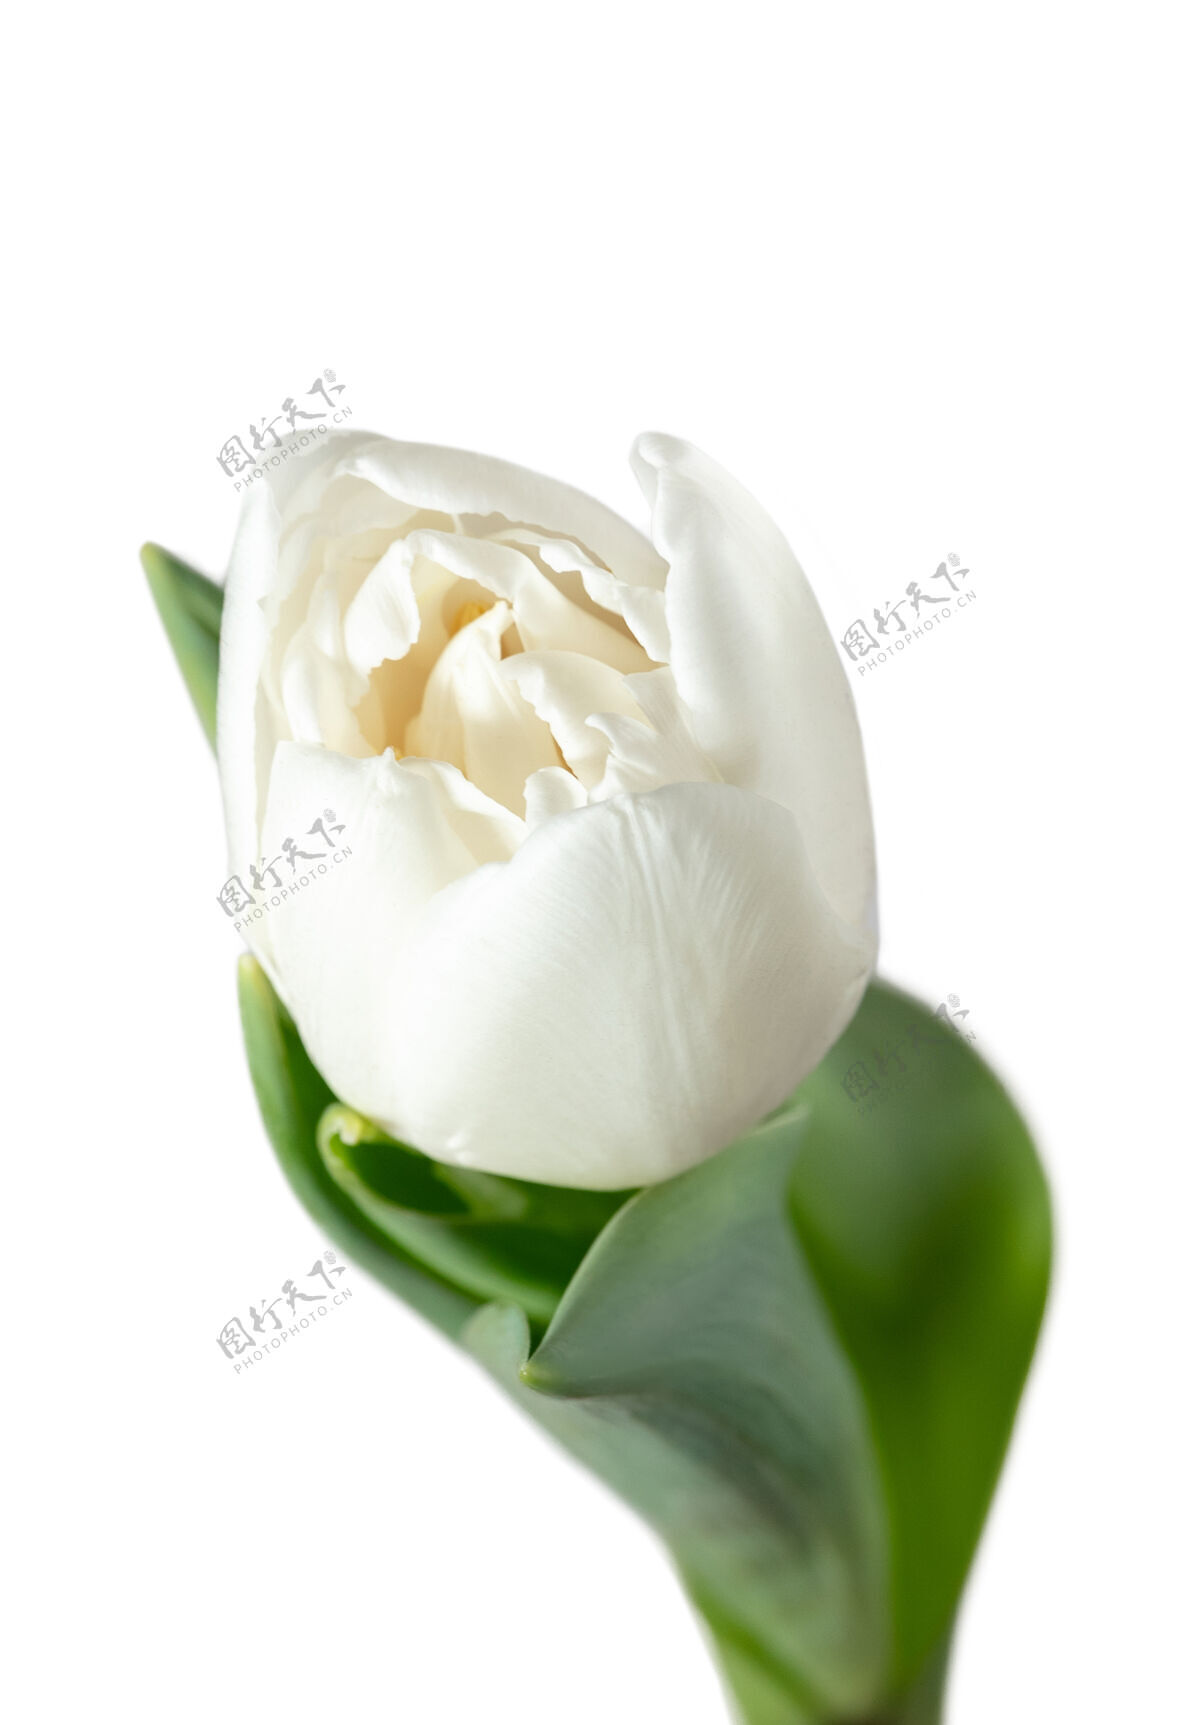 叶白色隔离在白色背景上的美丽新鲜郁金香的特写广告空间有机 花朵 春天的心情 花瓣和叶子的柔嫩和深沉的颜色华丽和辉煌爱花美丽